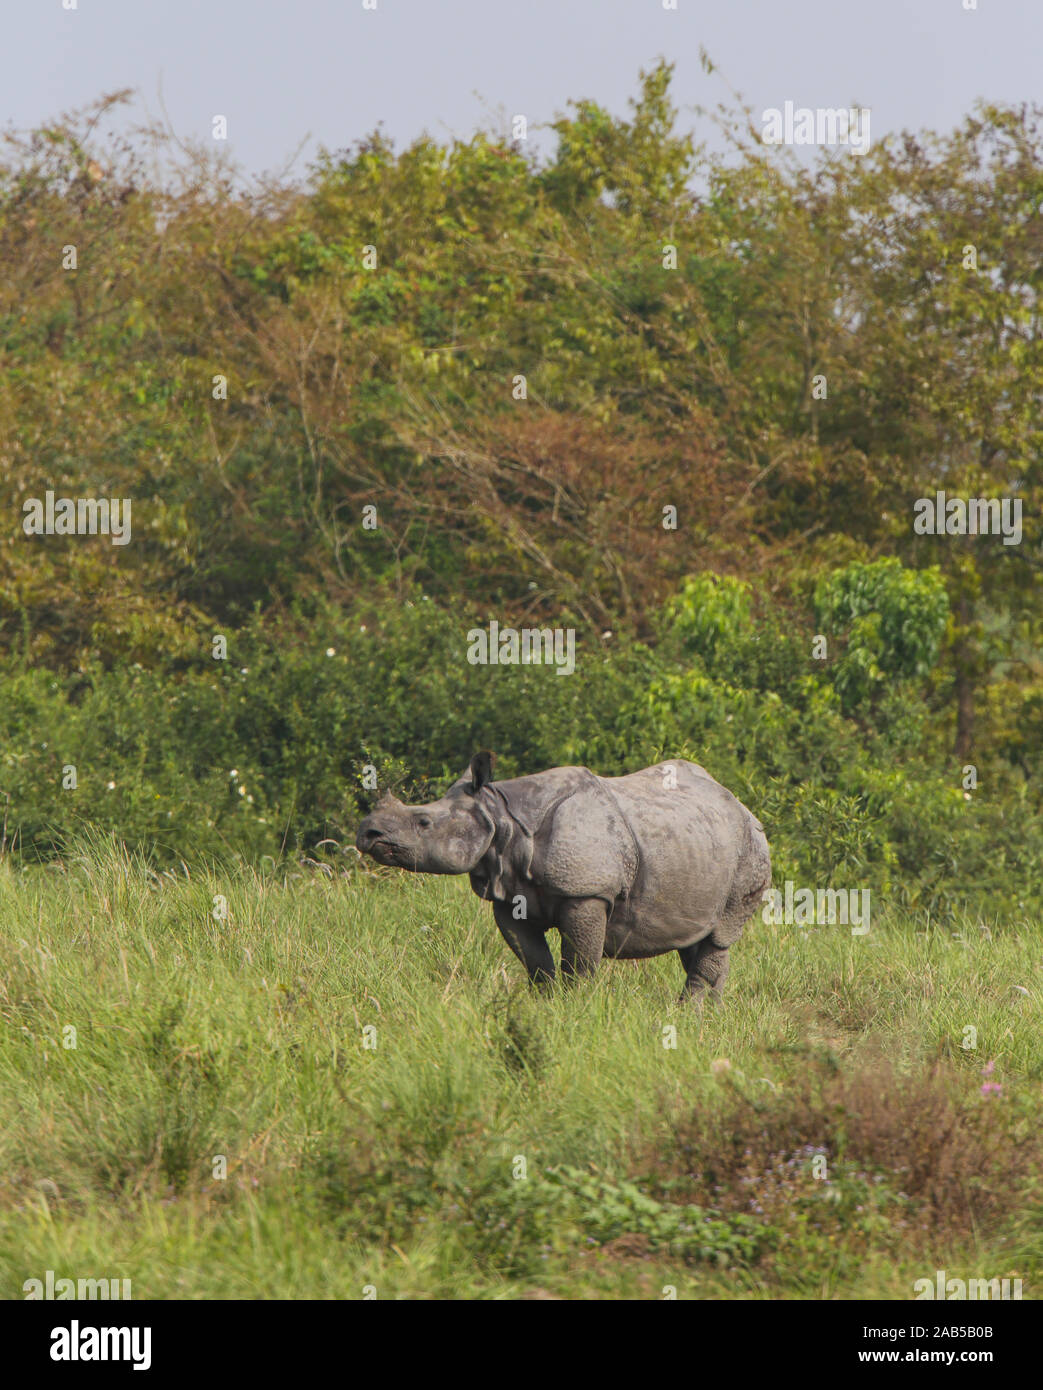 Un rhinocéros Cornu paissant dans les prairies du parc national de Kaziranga (Inde) Banque D'Images